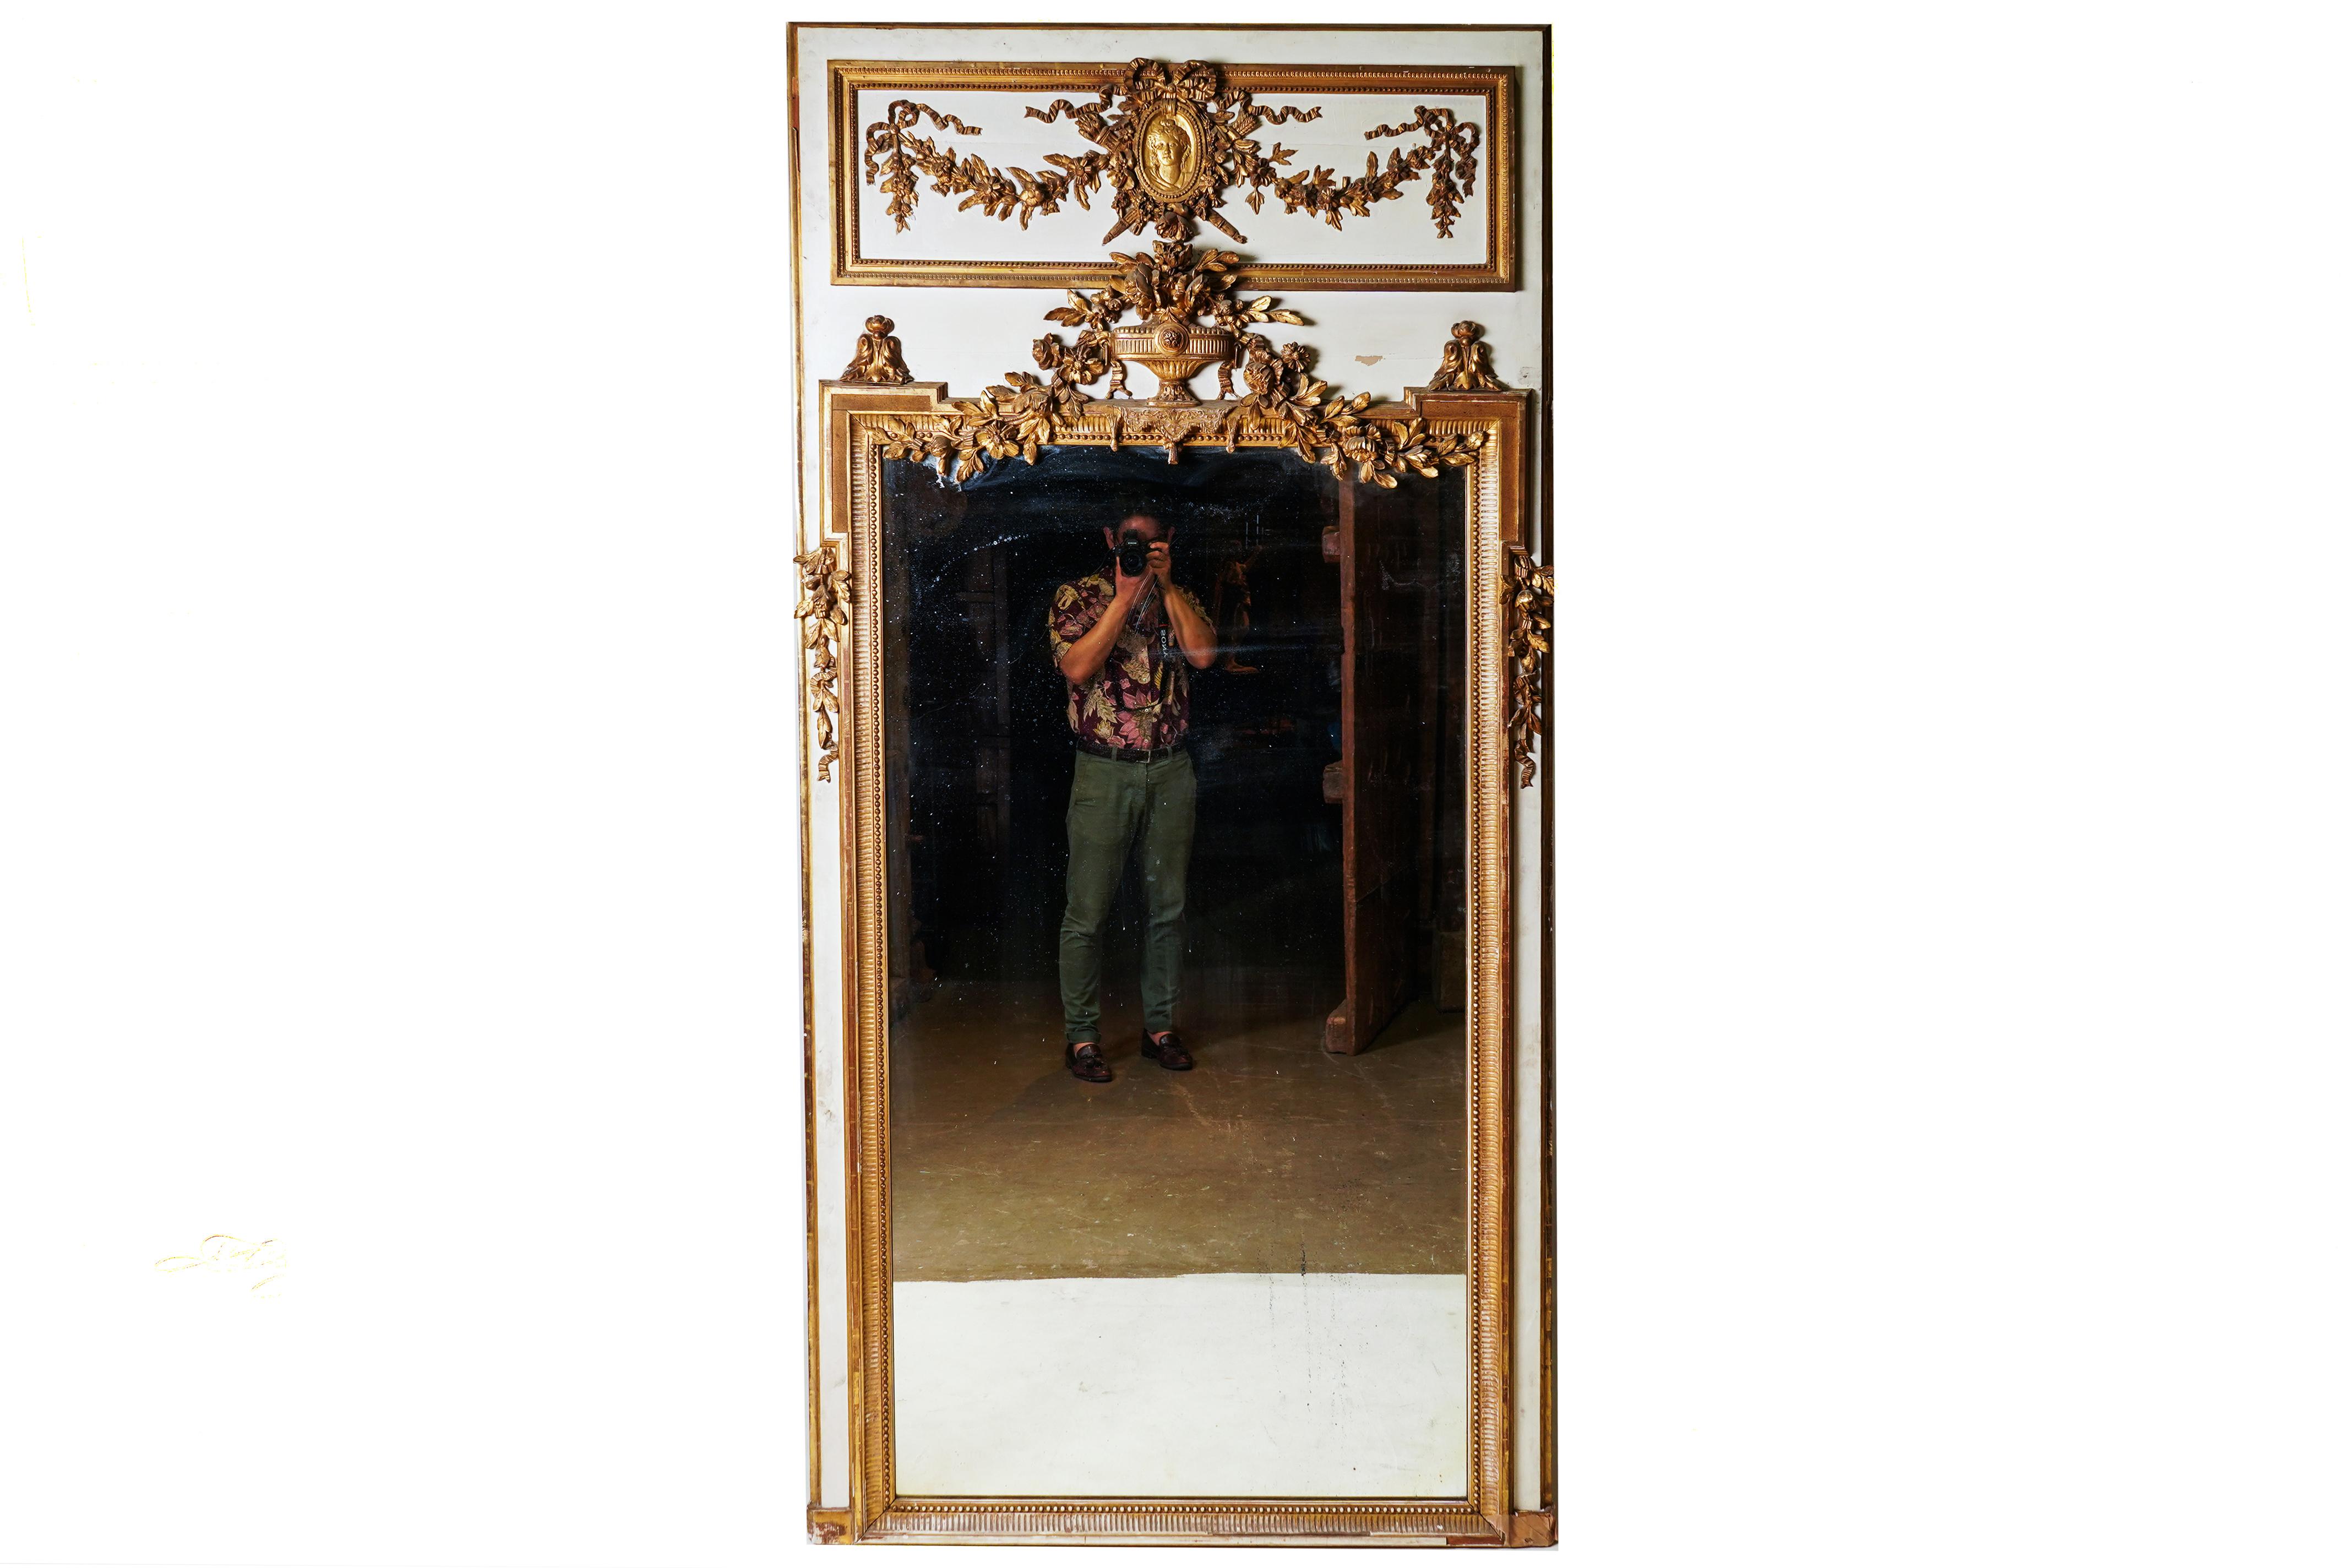 Dieser beeindruckend große und reich verzierte Trumeau-Spiegel stammt aus Paris, Frankreich, und ist aus Kiefernholz, Gesso und echter Goldvergoldung gefertigt. Das Spiegelglas ist ein antikes Glas mit versilberter Unterlage, das möglicherweise